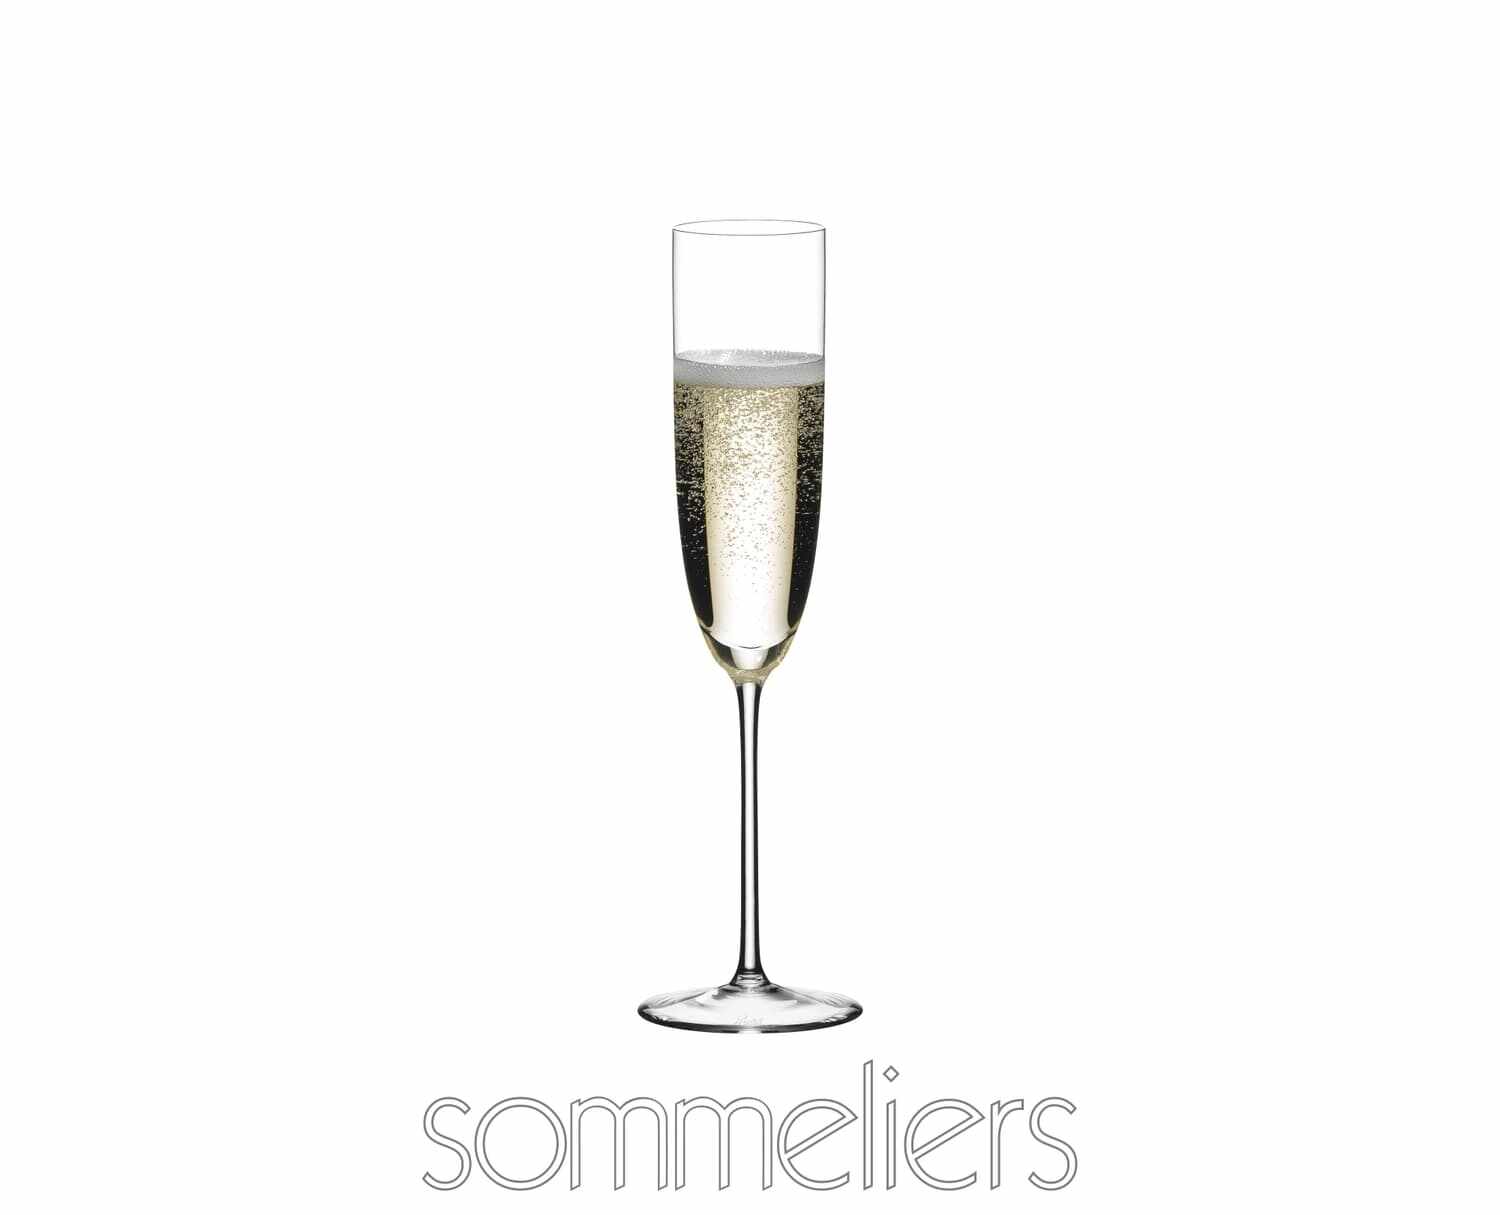 Pahar pentru sampanie, din cristal Sommeliers Champagne Clear, 170 ml, Riedel